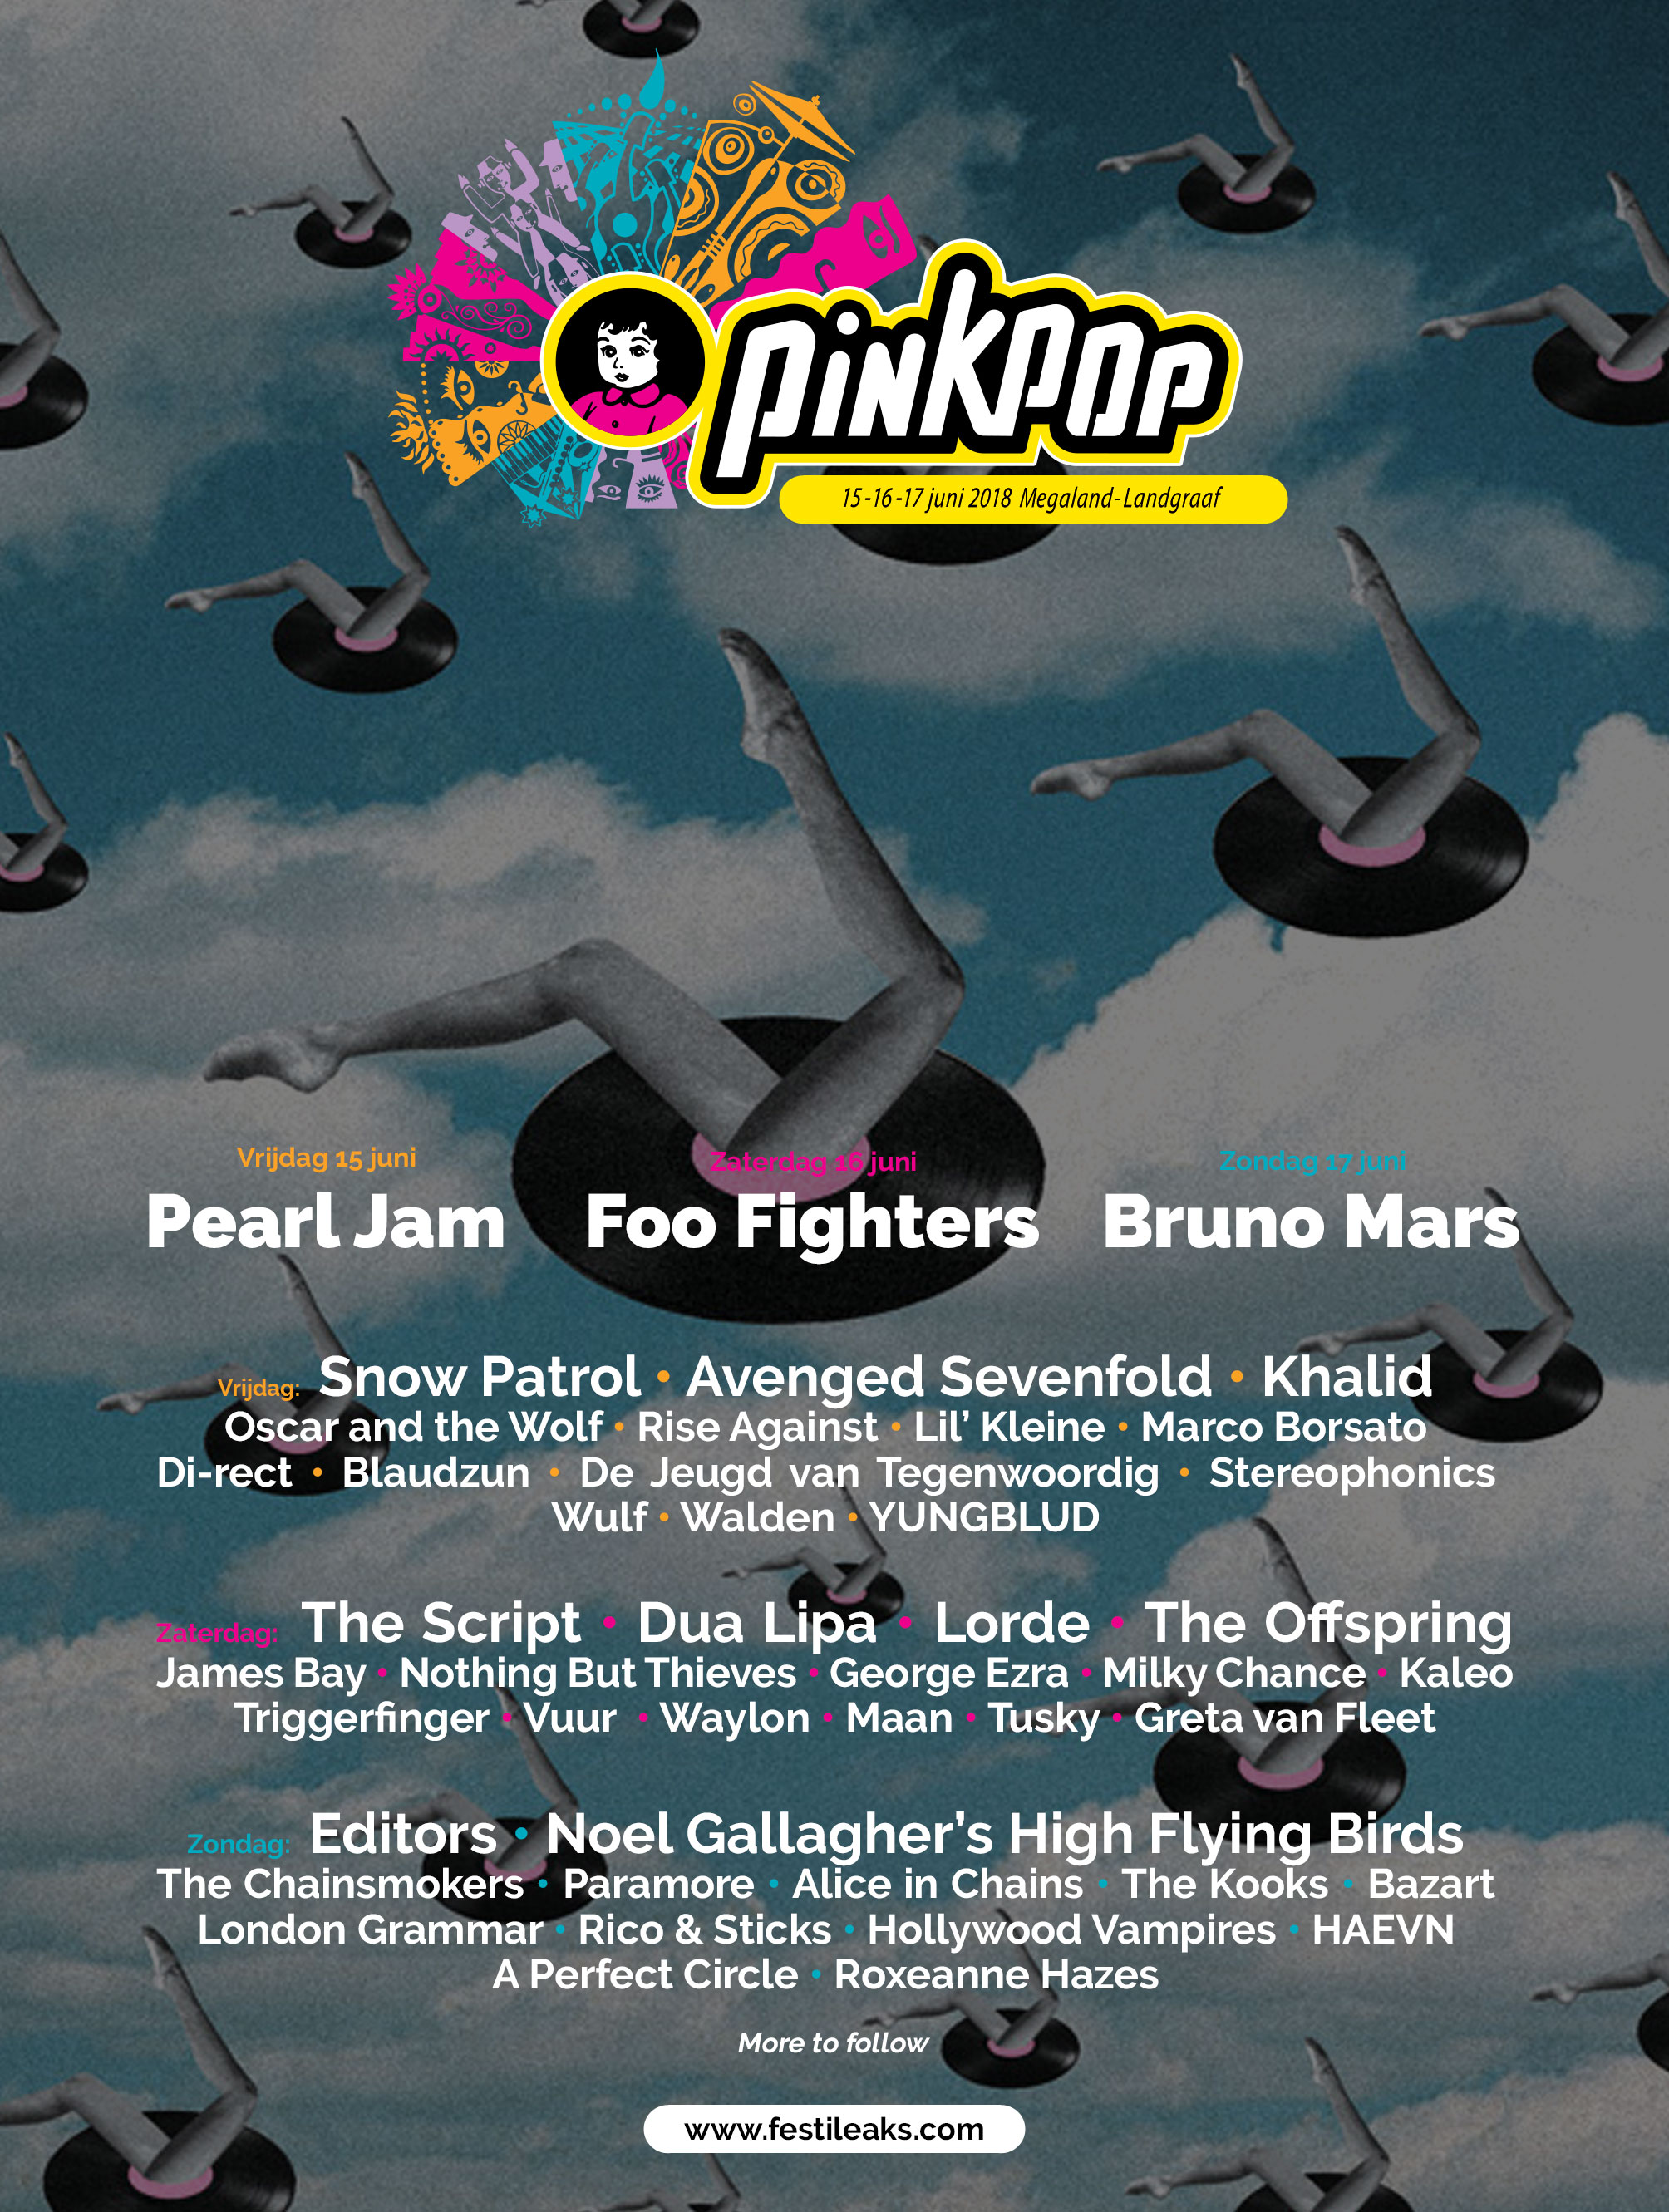 pinkpop-poster-2018-v4.jpg